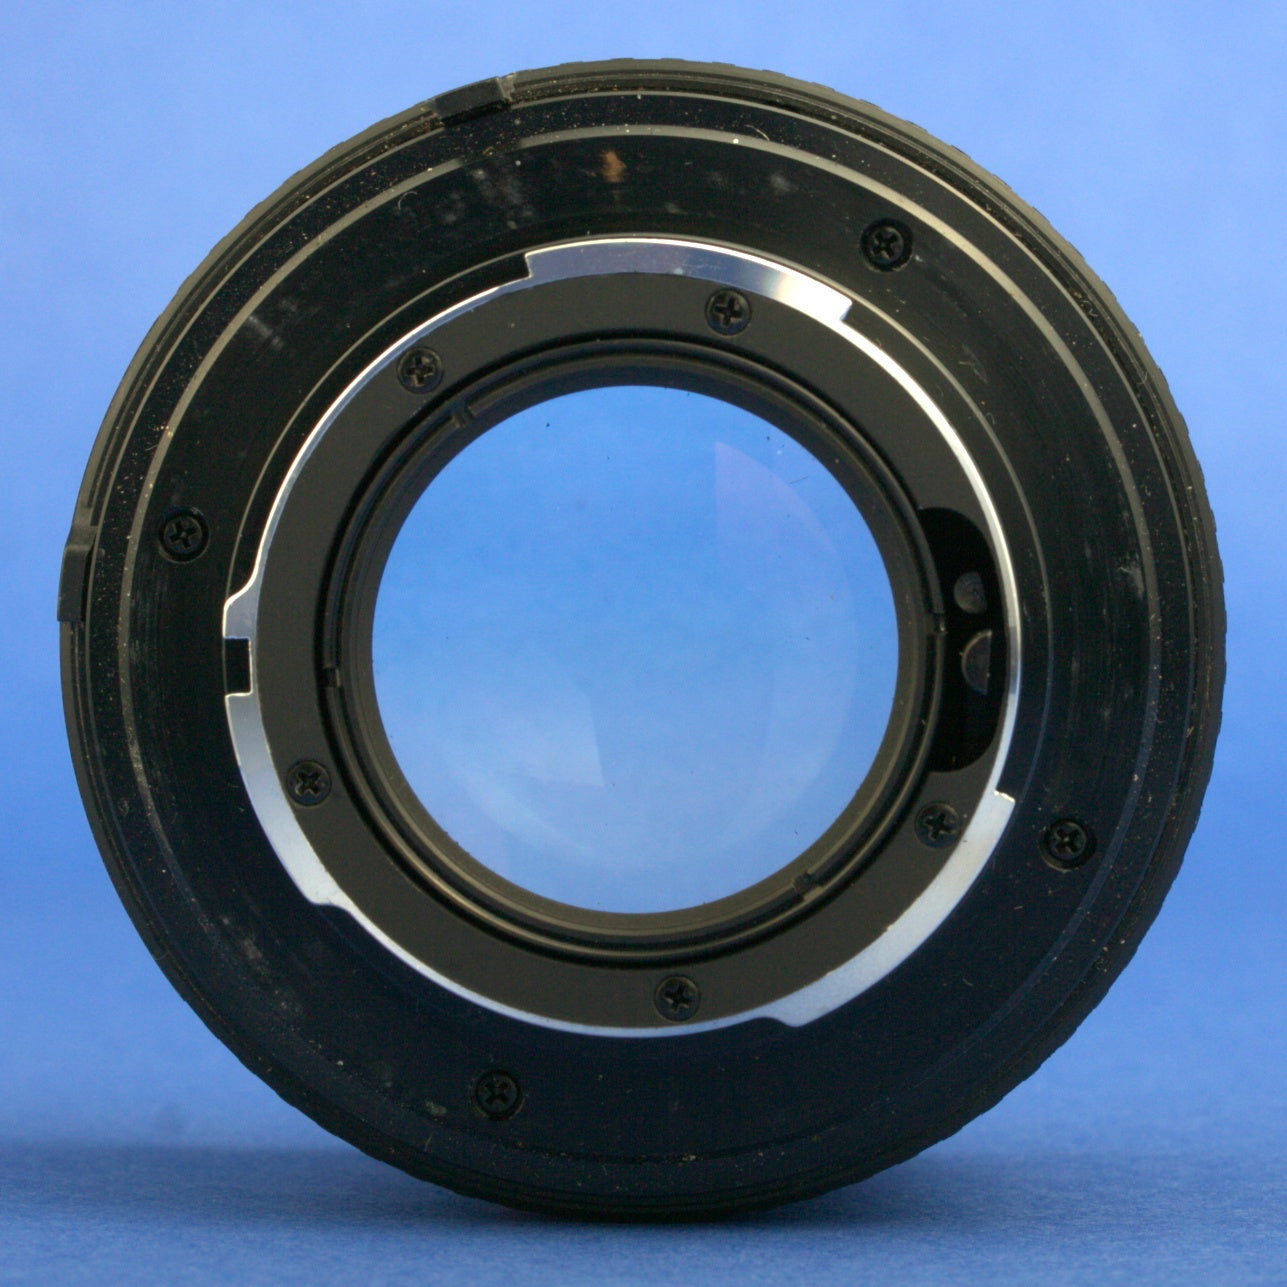 Minolta MD 50mm 1.4 Lens